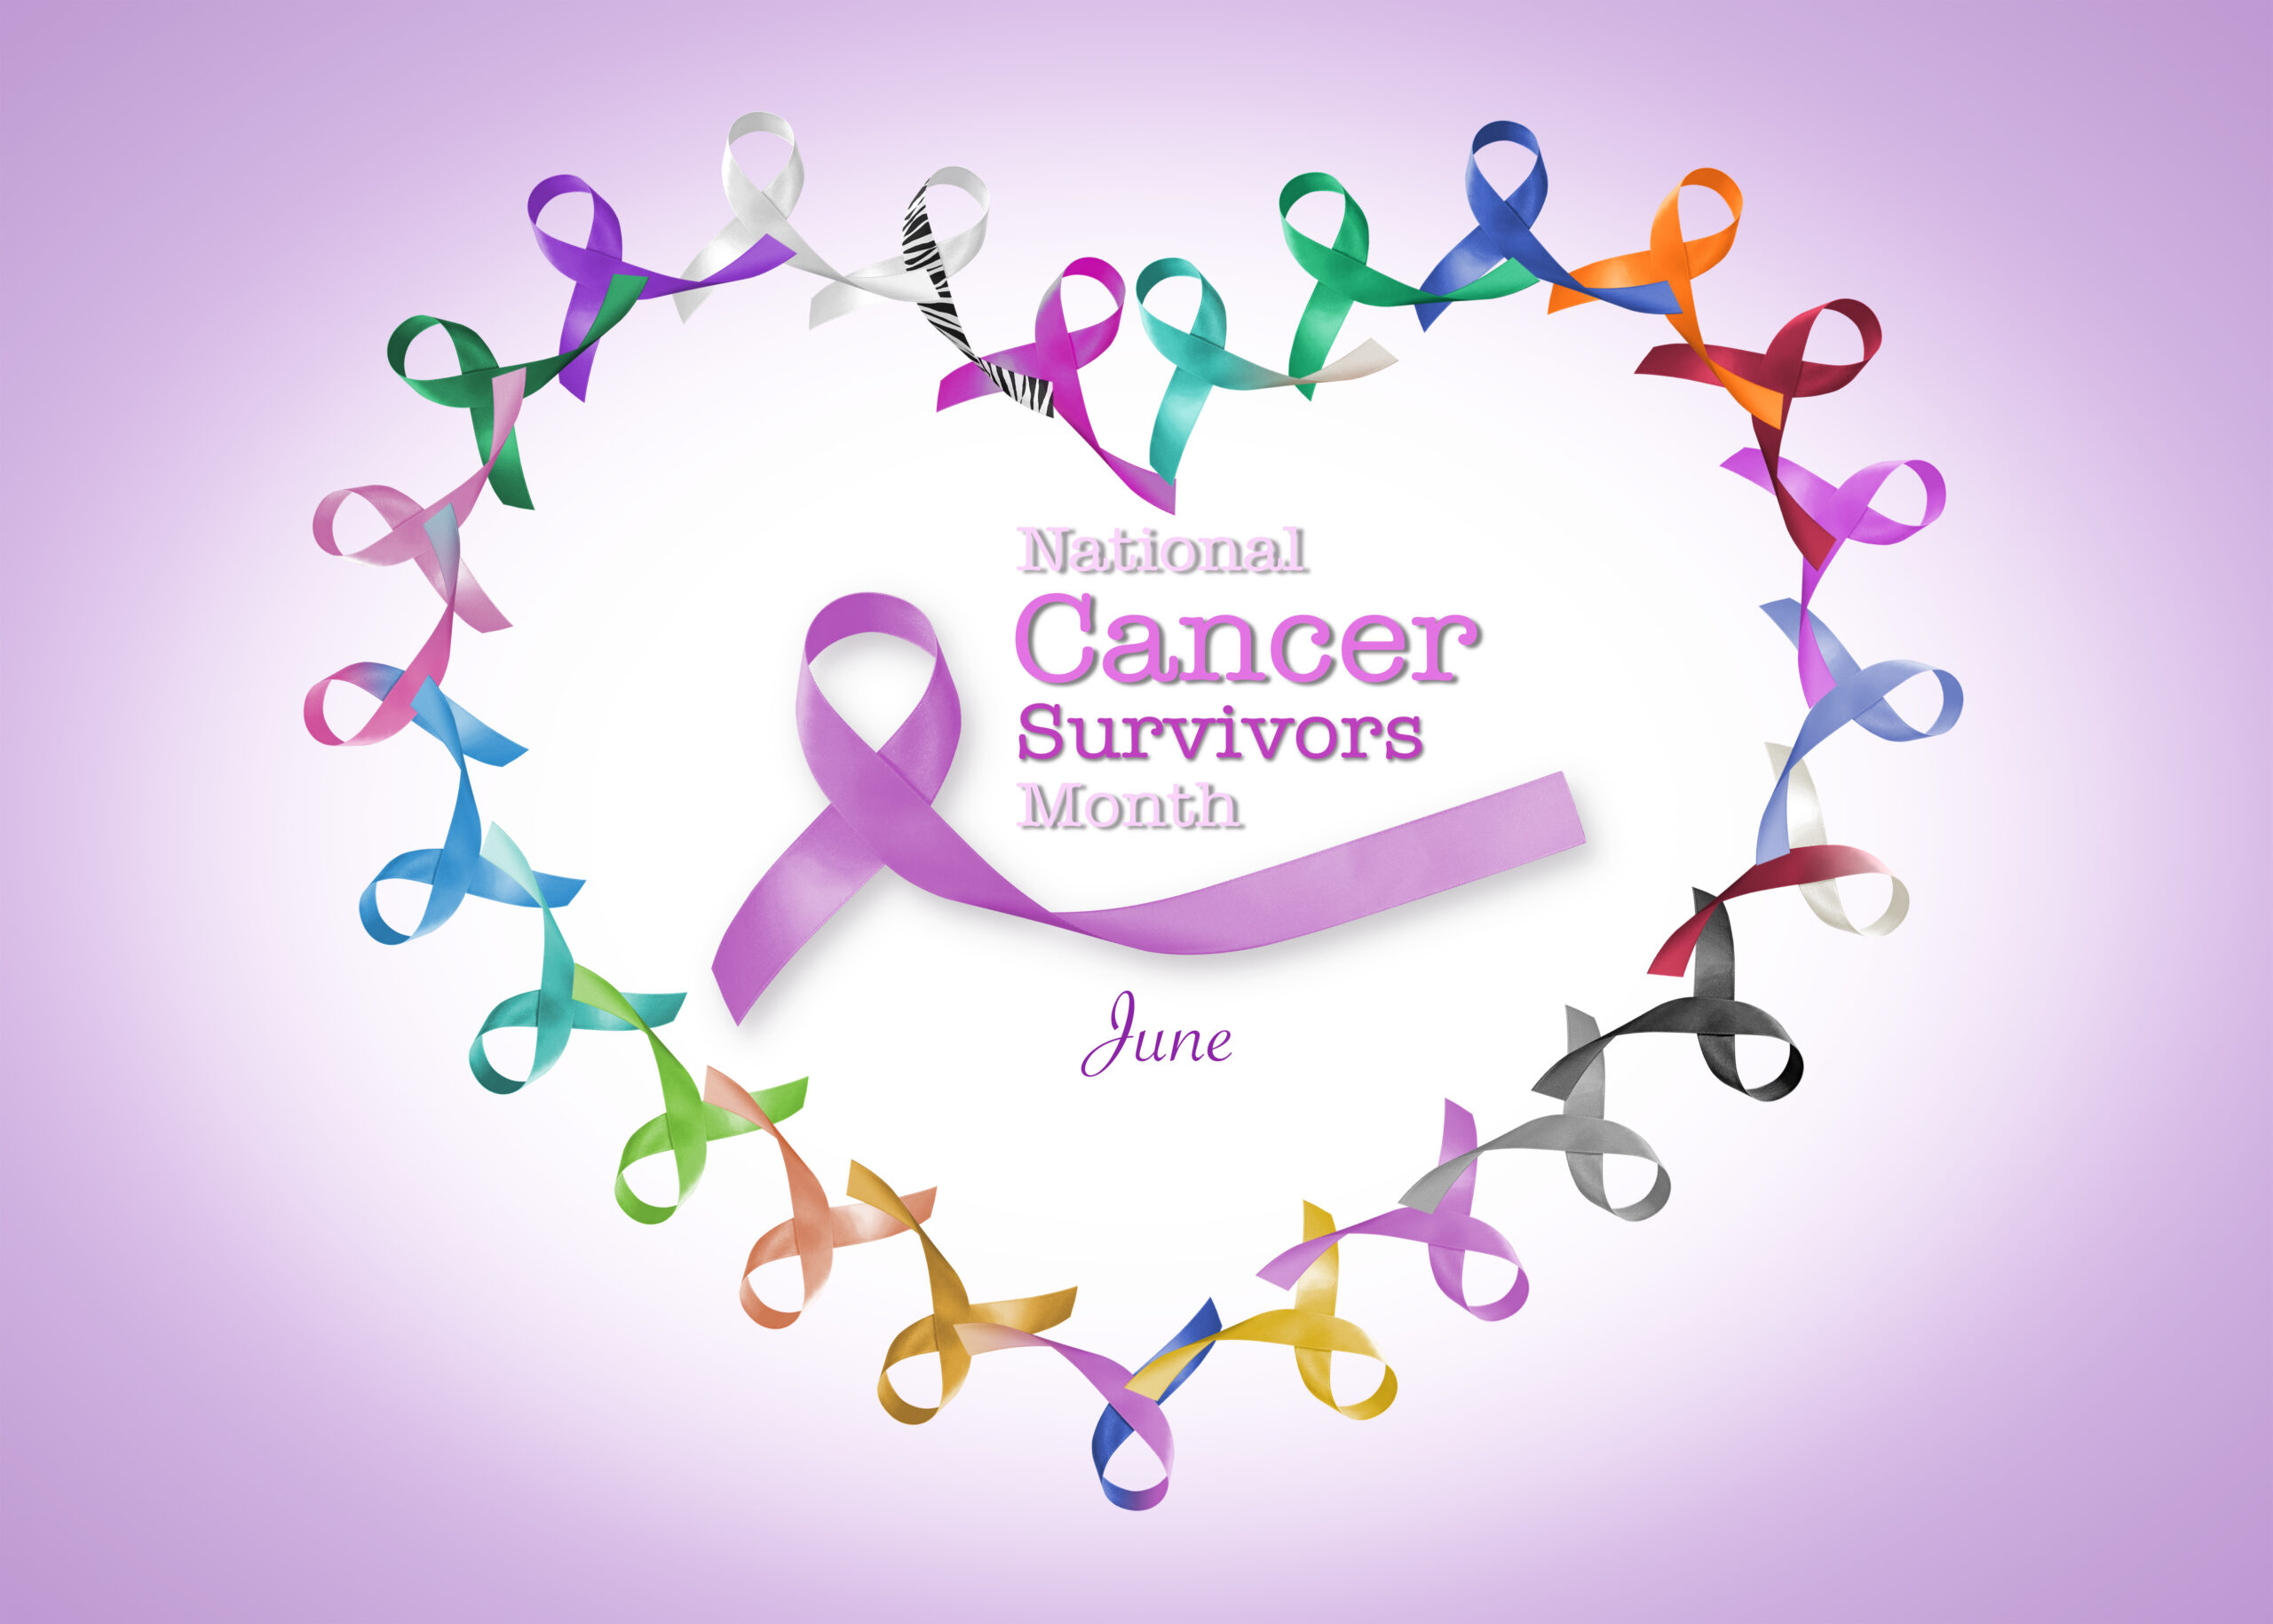 National Cancer Survivor Month: Celebrate Cancer Survivors on June